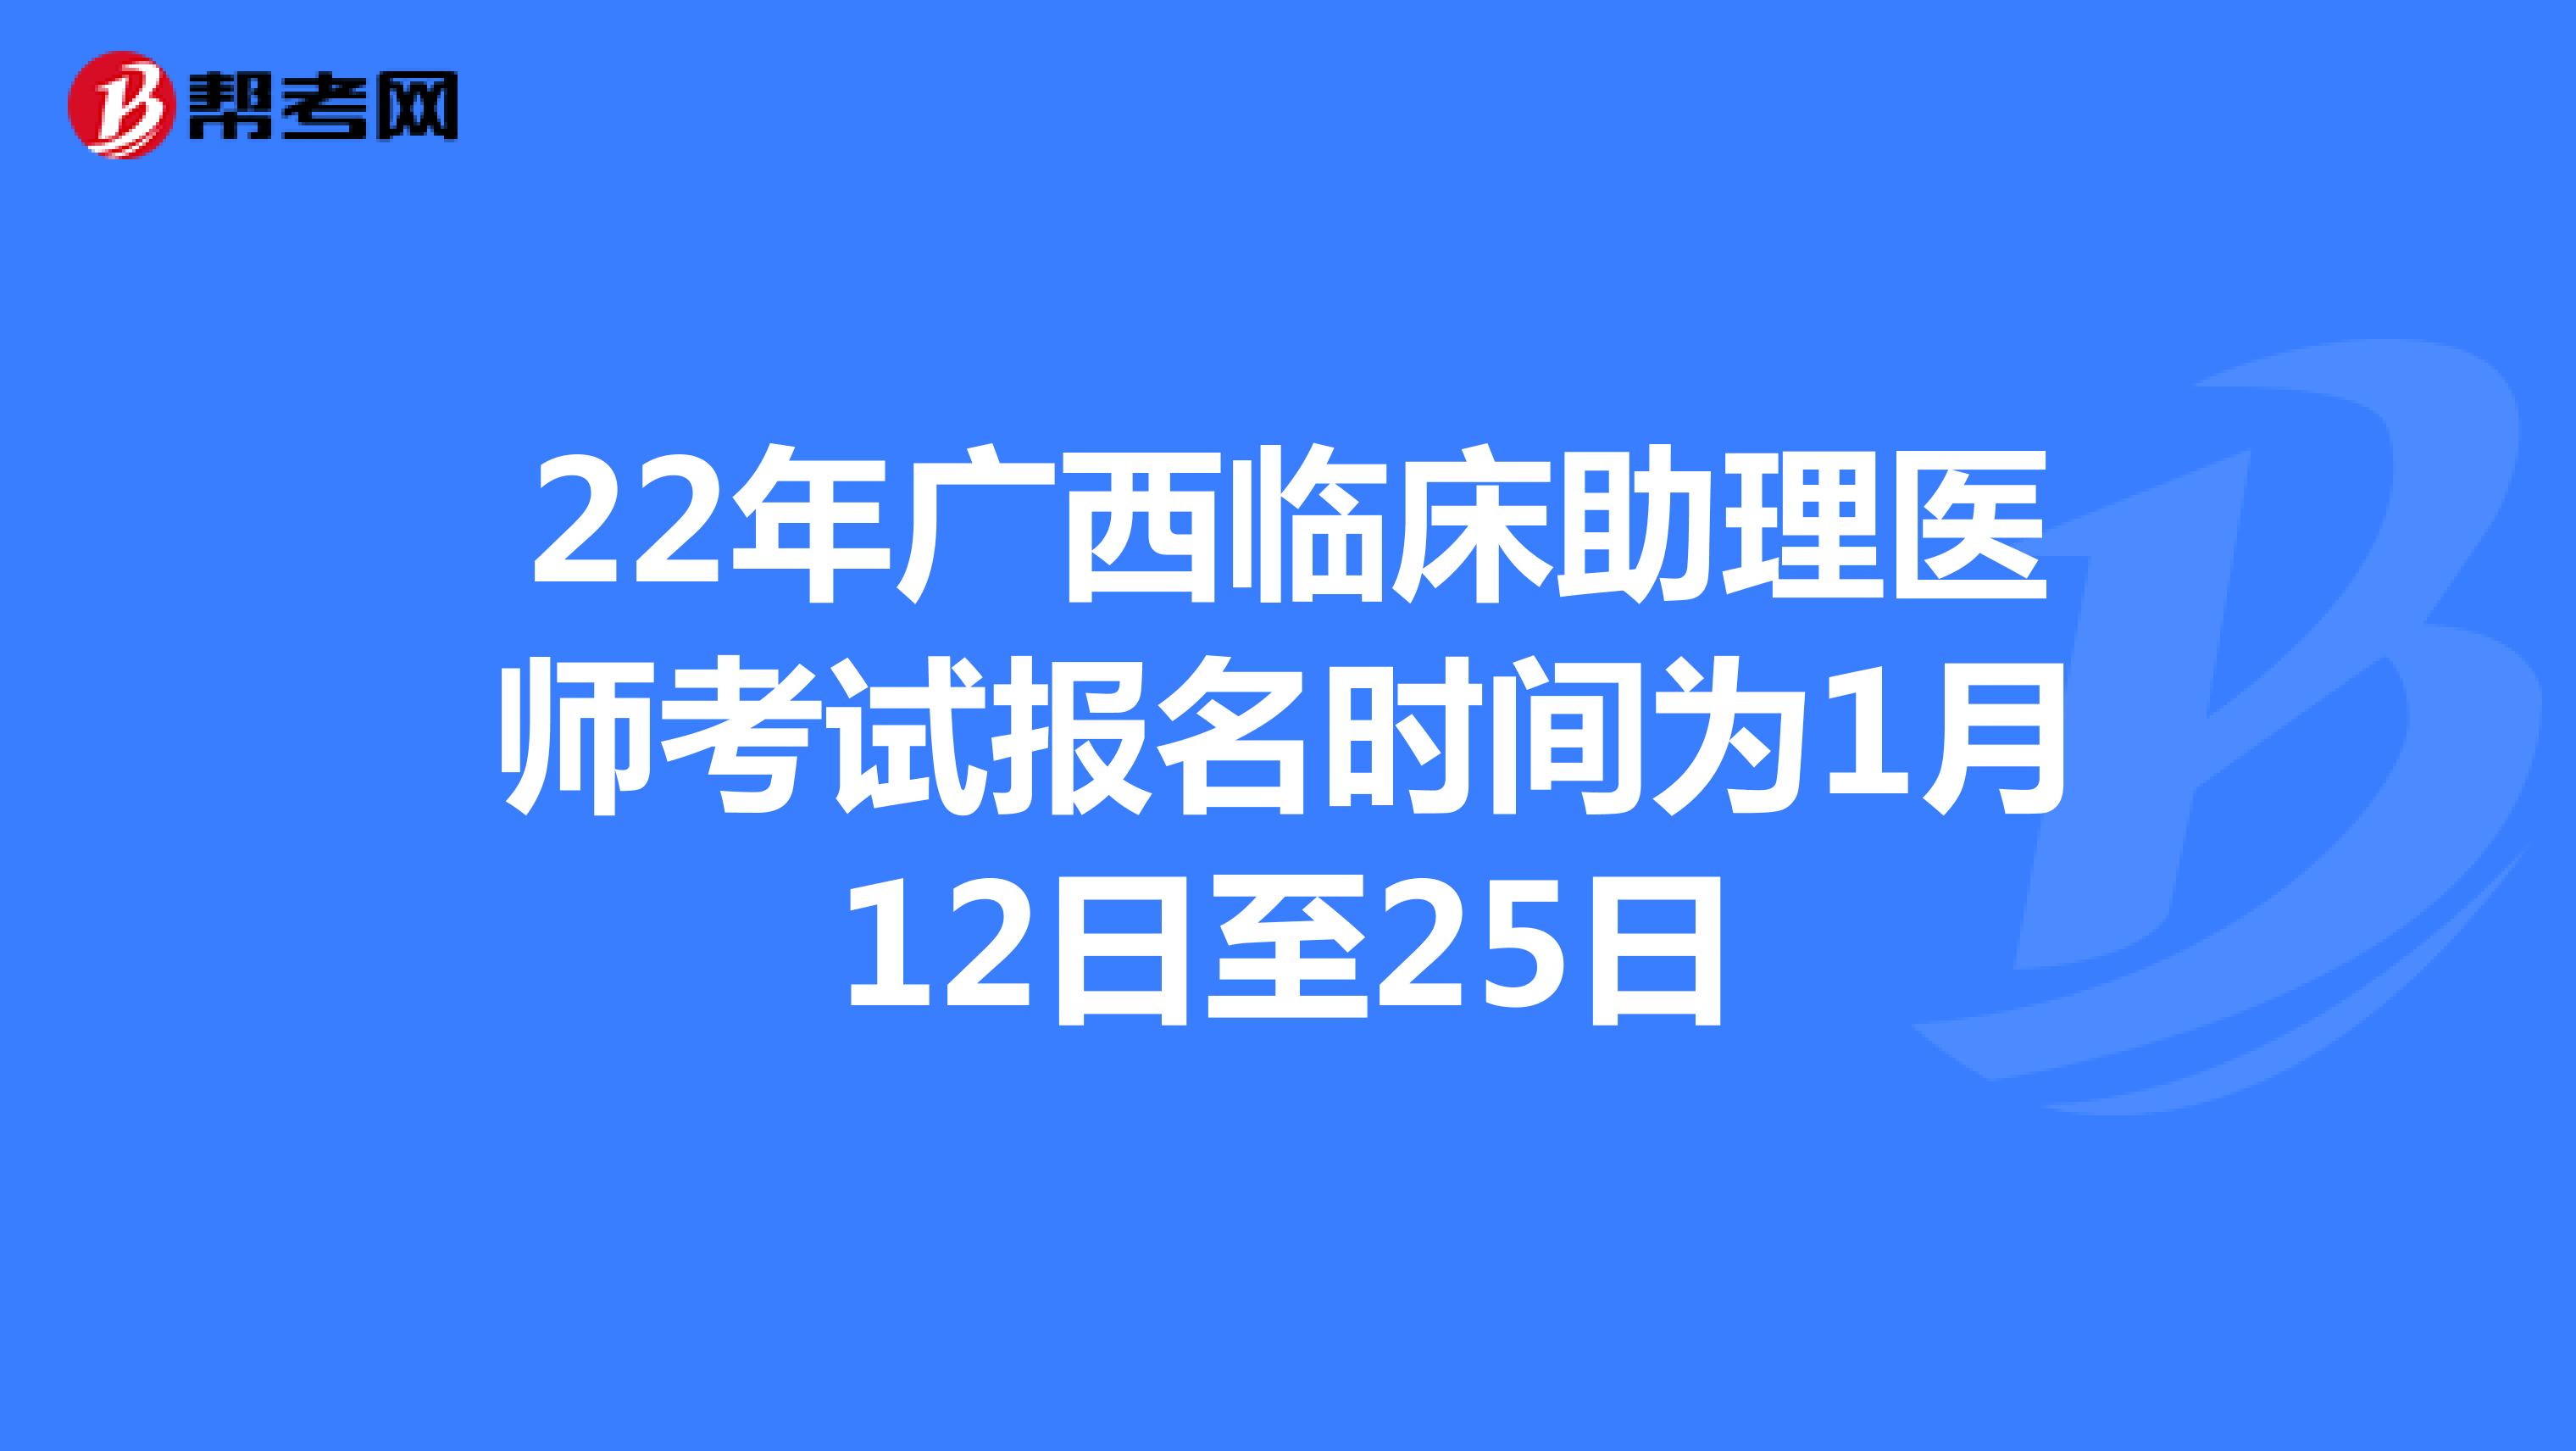 22年广西临床助理医师考试报名时间为1月12日至25日